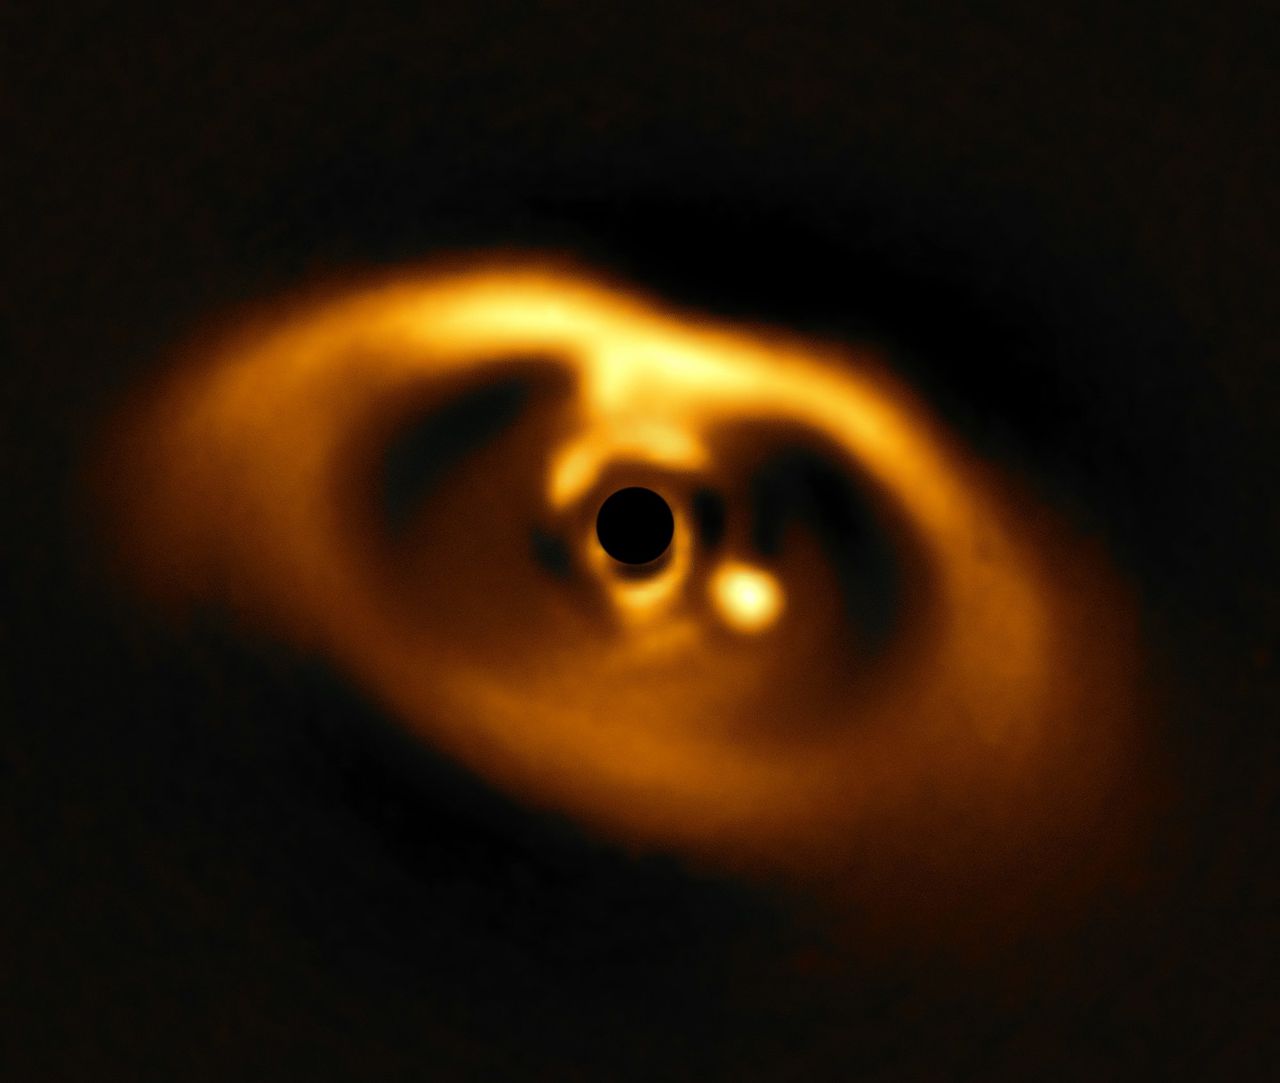 Infraroodfoto van de (afgedekte) jonge ster PDS 70, het gas en stof eromheen én de planeet-in-wording PDS 70b - de lichtvlek rechts ondernaast de (afgedekte) ster. De planeet is bezig om het centrale deel van de schijf van gas en stof rond zijn moederster schoon te vegen.